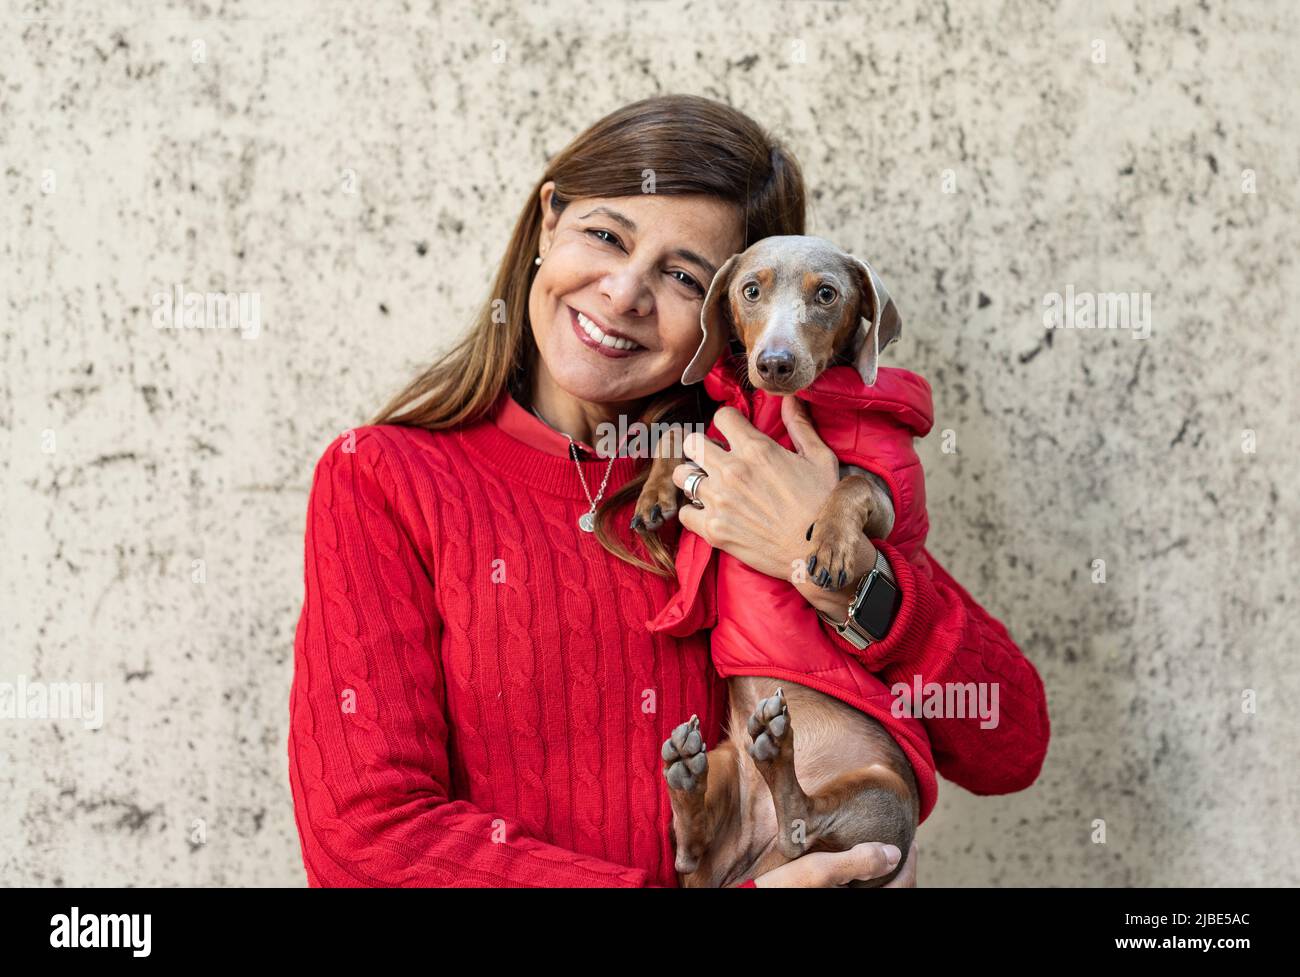 Eine lateinische Frau mit ihrem Hund, beide in Rot gekleidet und in die Kamera schauend Stockfoto